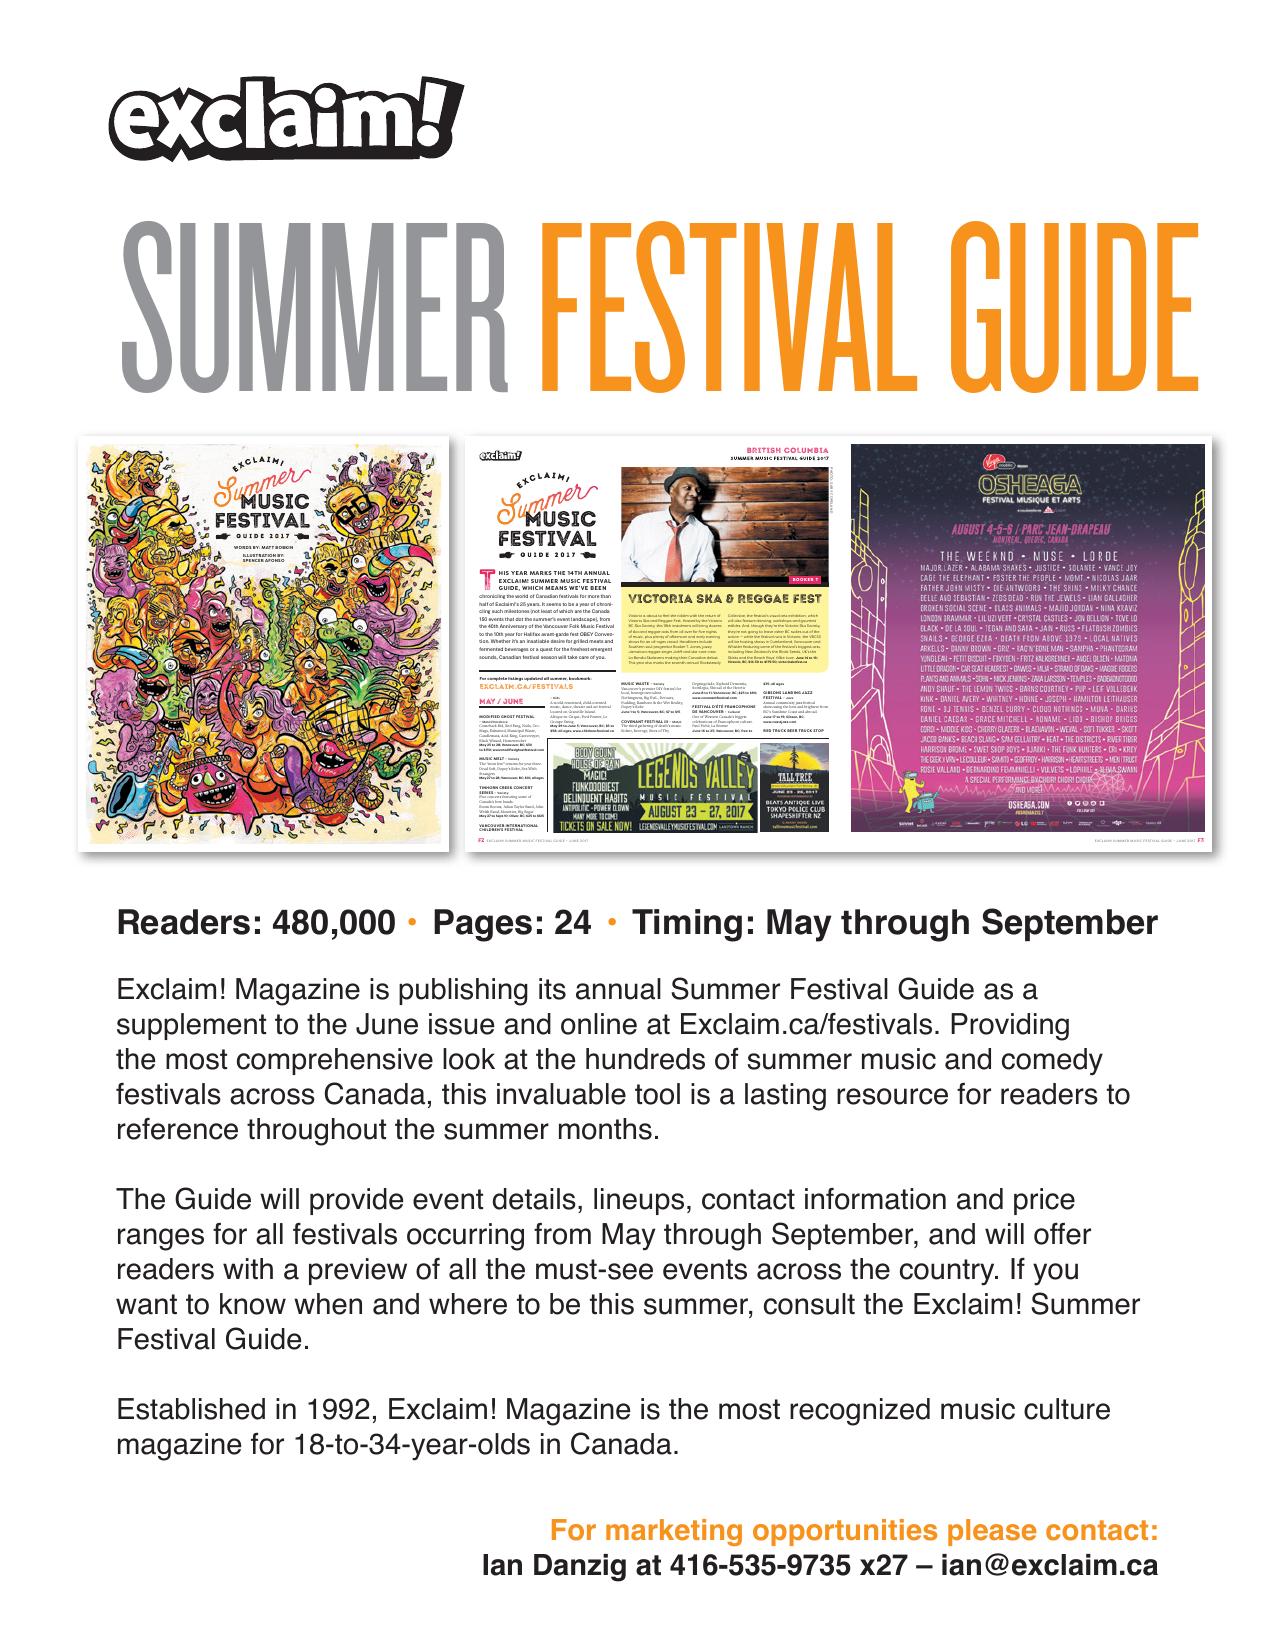 exclaim_summer_festival_guide.jpg